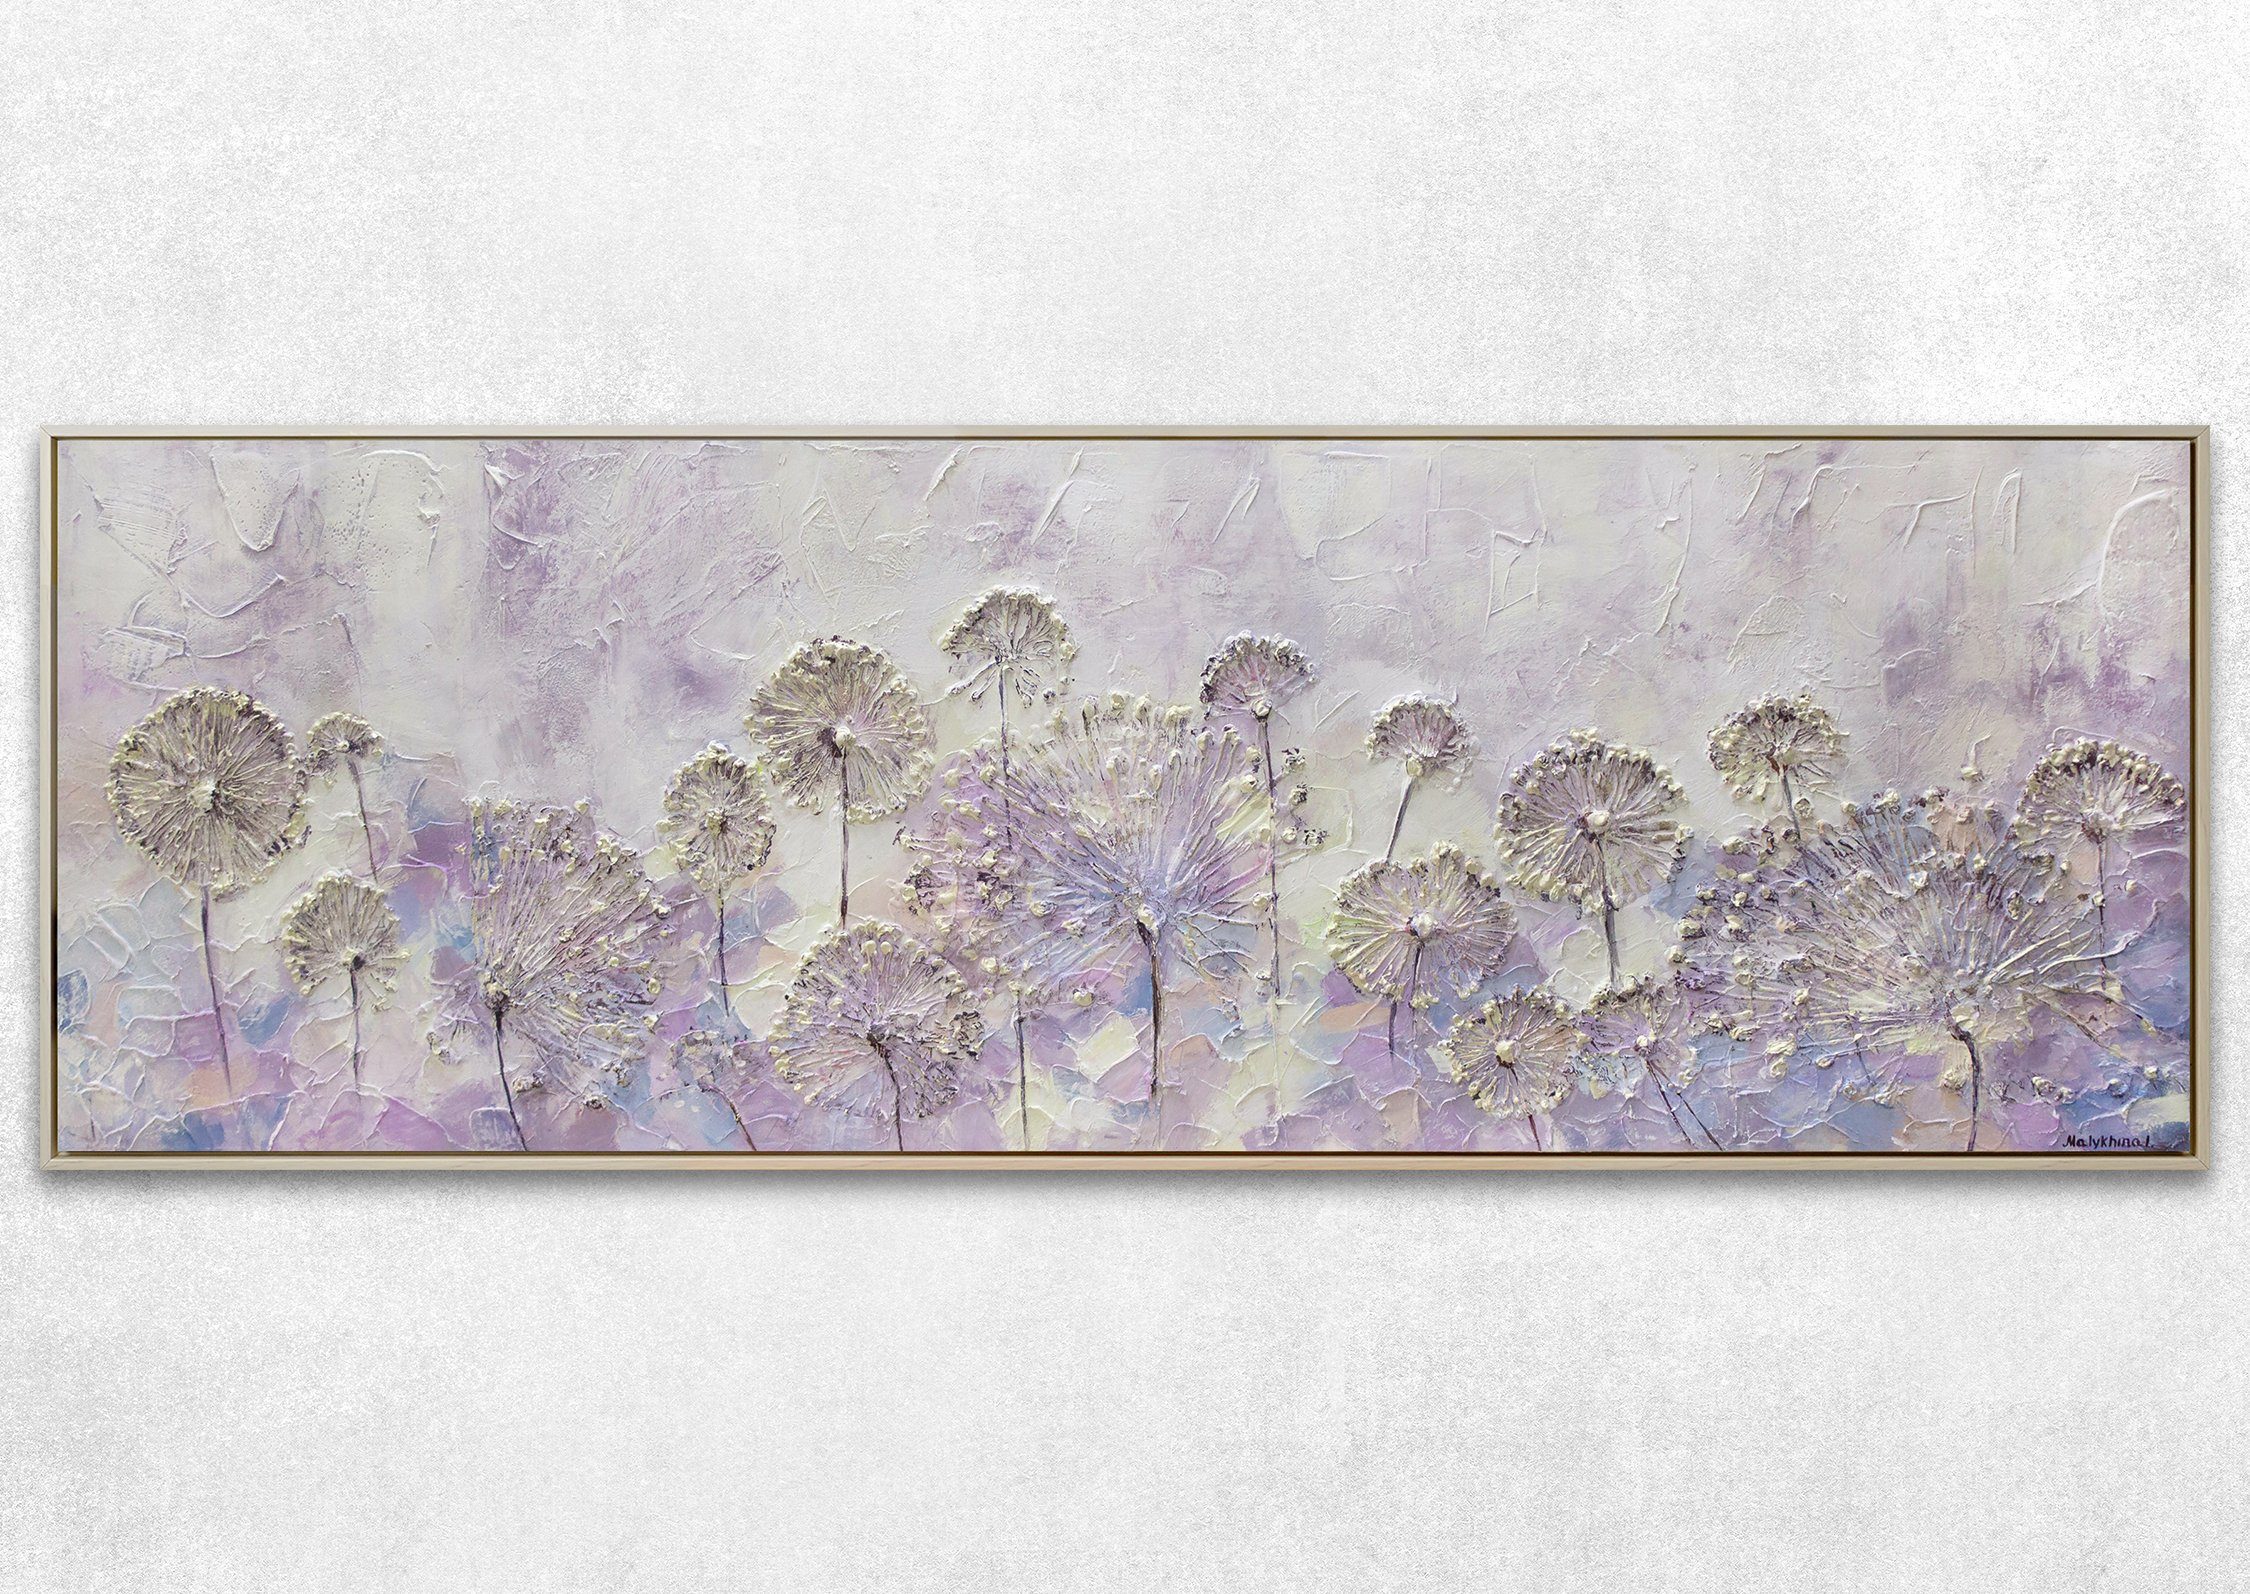 Leinwand Blumen Blumen, Rahmen Frühlingsanfang, Mit Beige Löwenzahn Bild YS-Art Gemälde Lila in Handgemalt